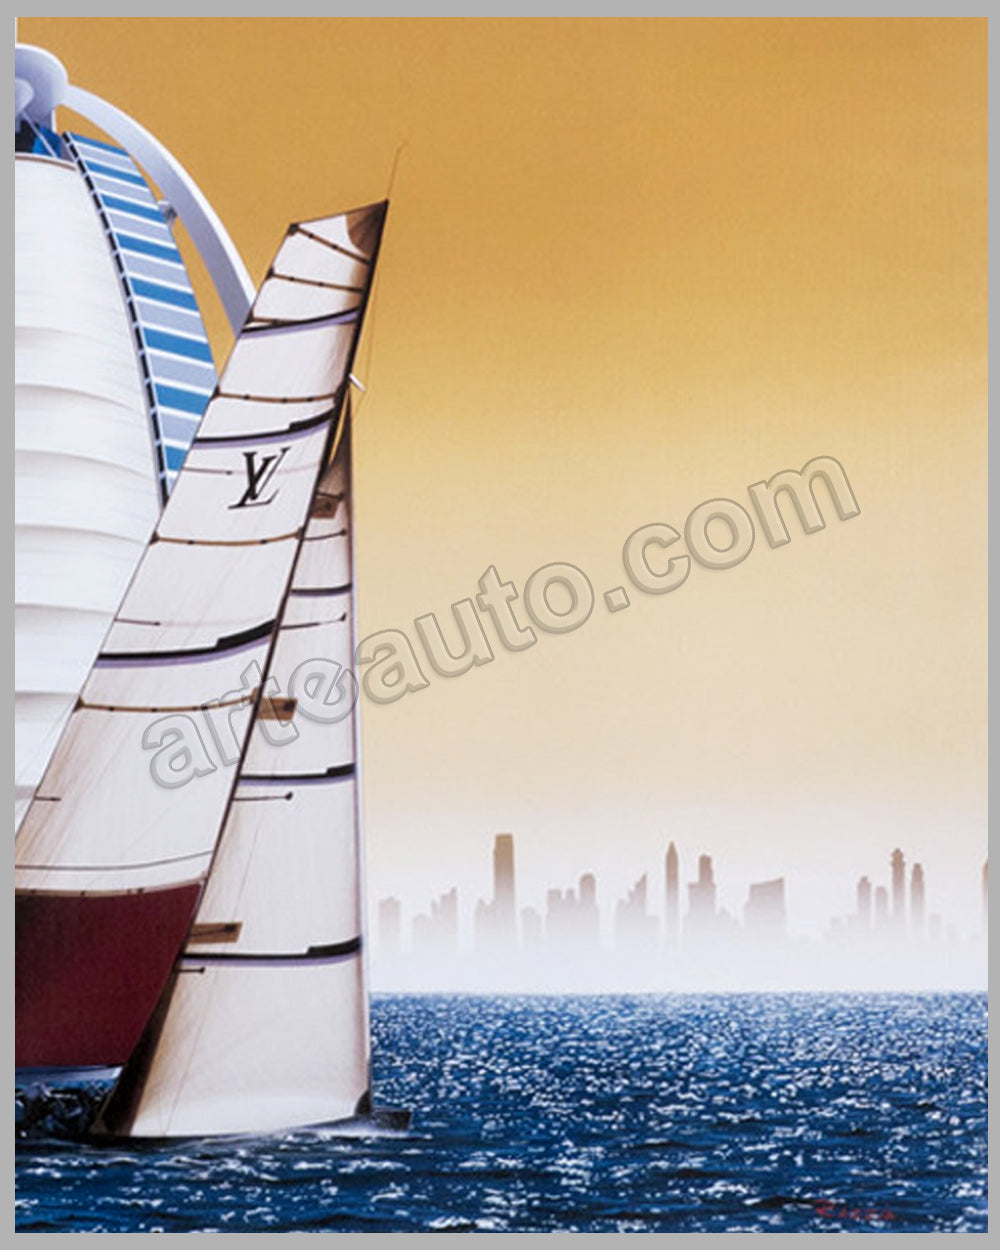 Louis Vuitton Trophy - Dubai - 2010 large poster by Razzia - l'art et  l'automobile